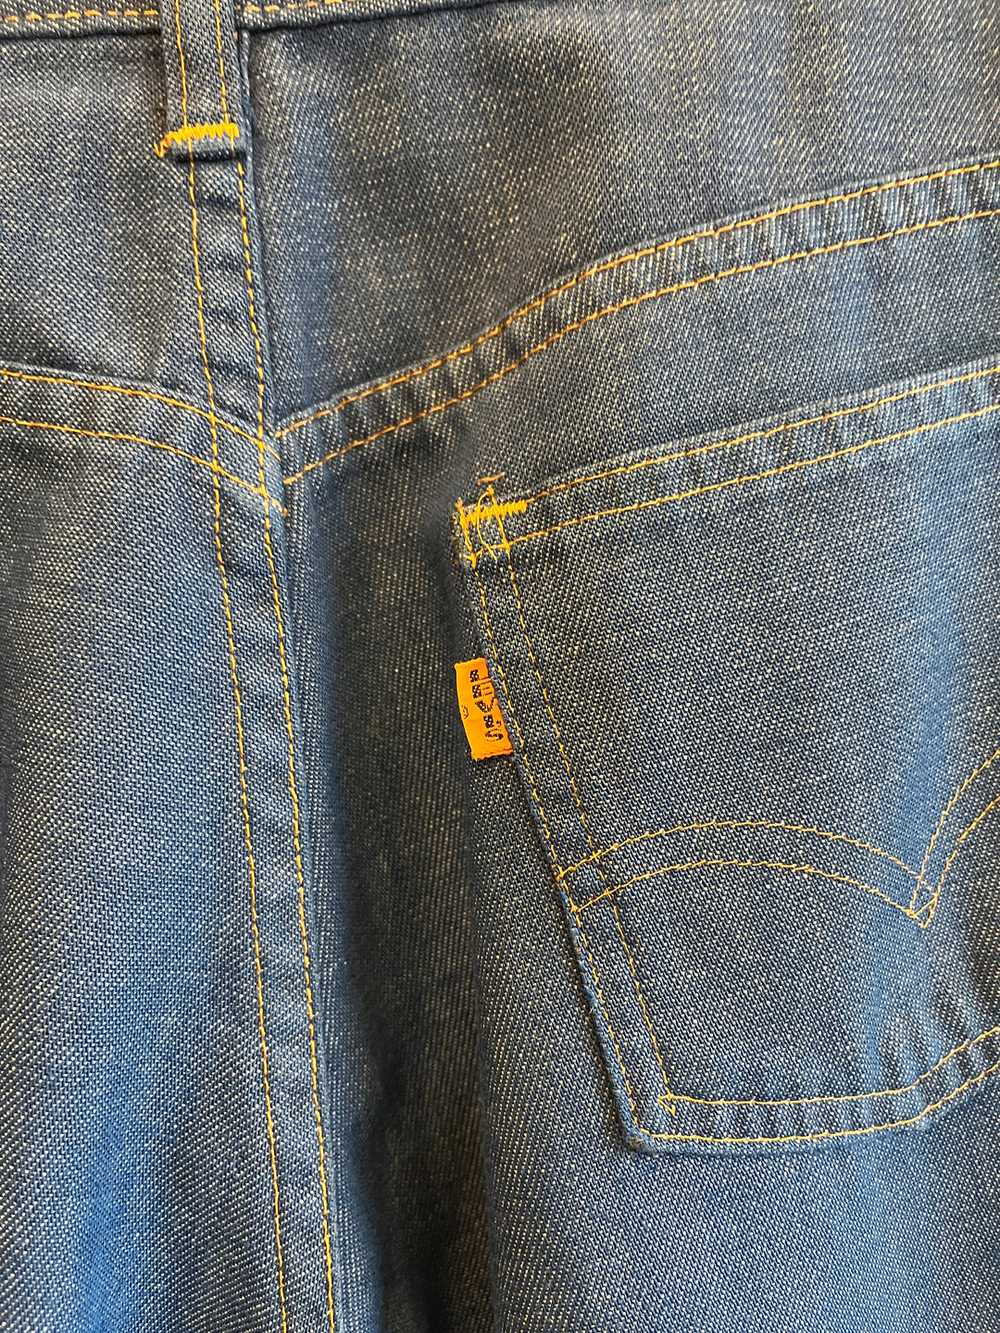 Vintage 1970’s Levi’s “Big E” 917 Denim Jeans - image 4